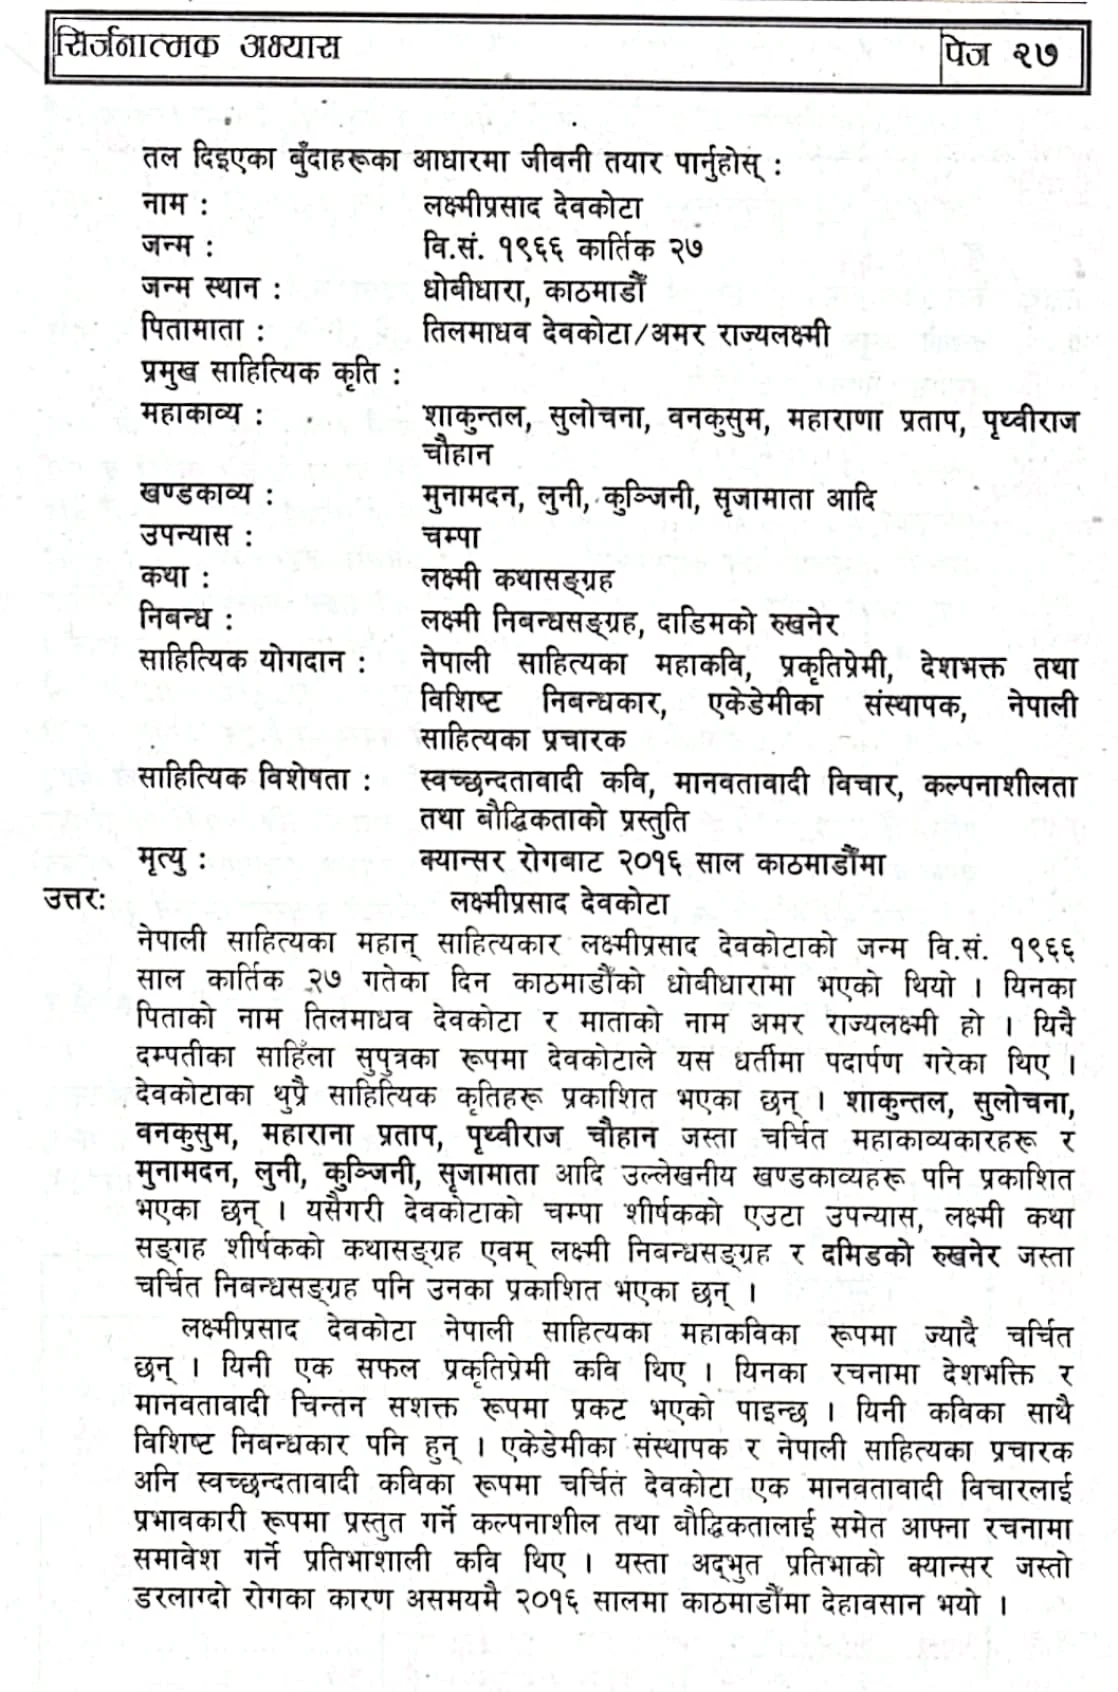 Sanduk Ruit : Class 10 Nepali Exercise